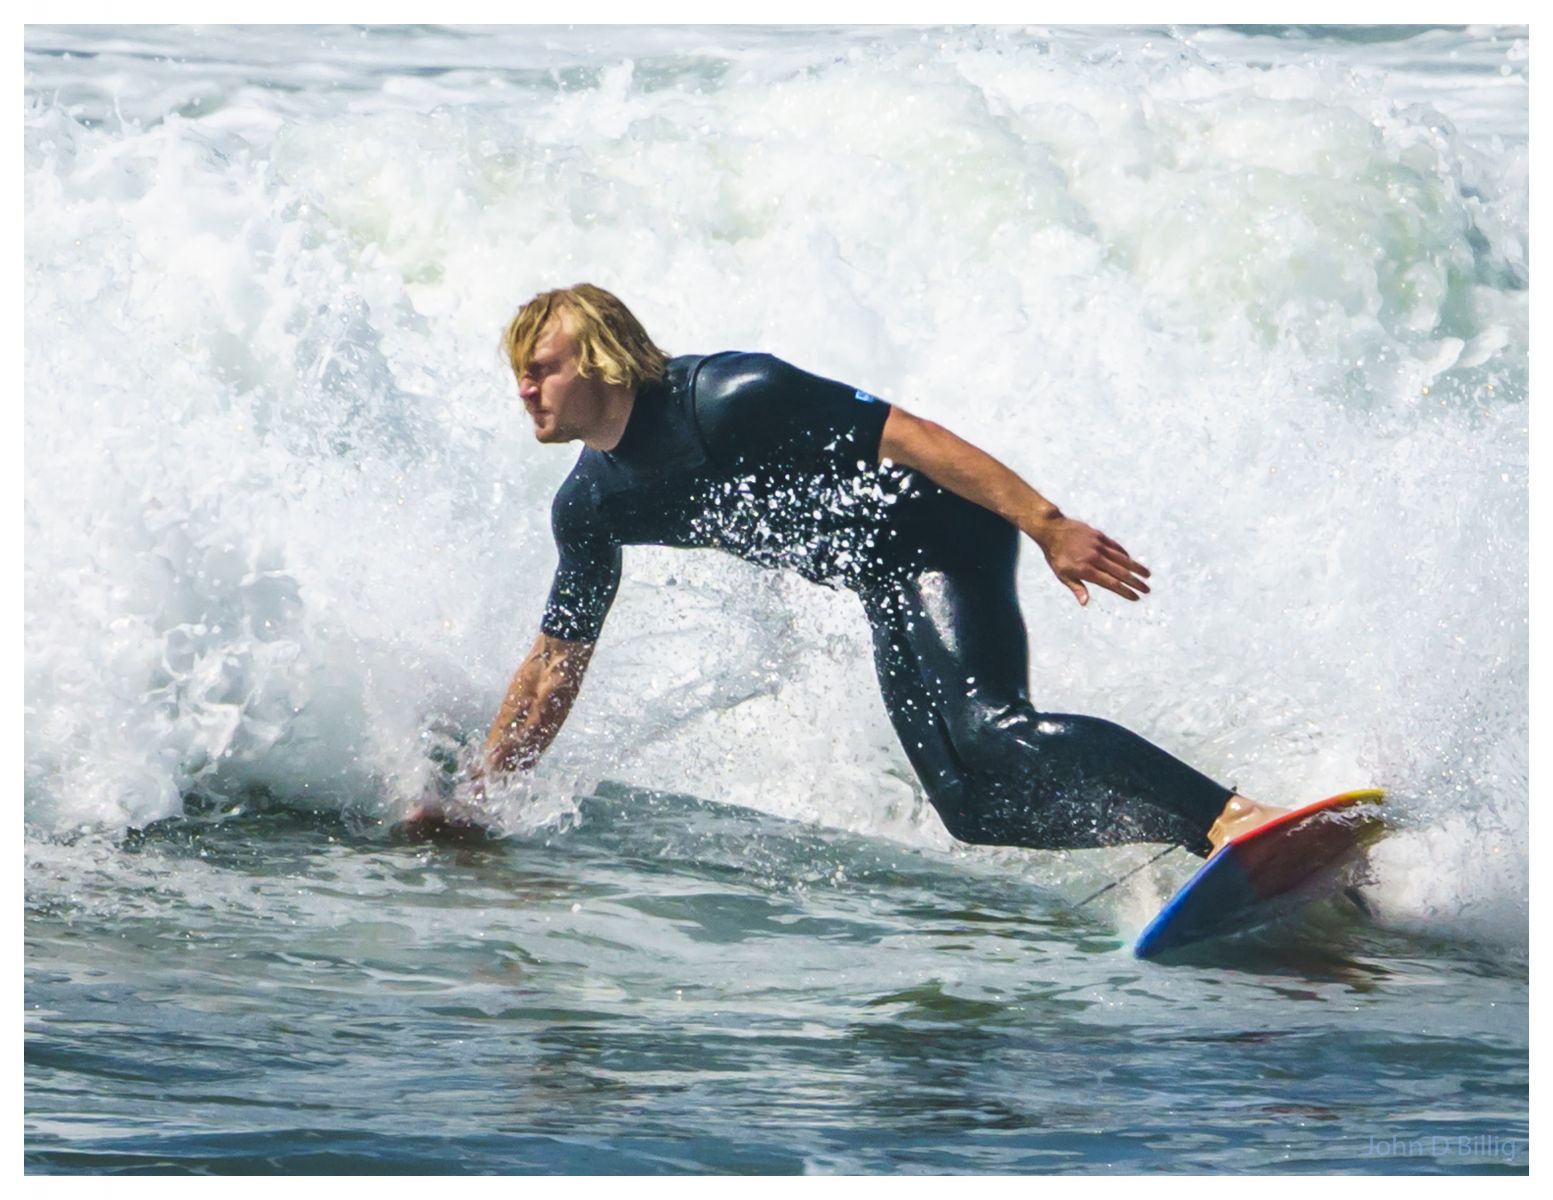 Surfer, Venture Ca